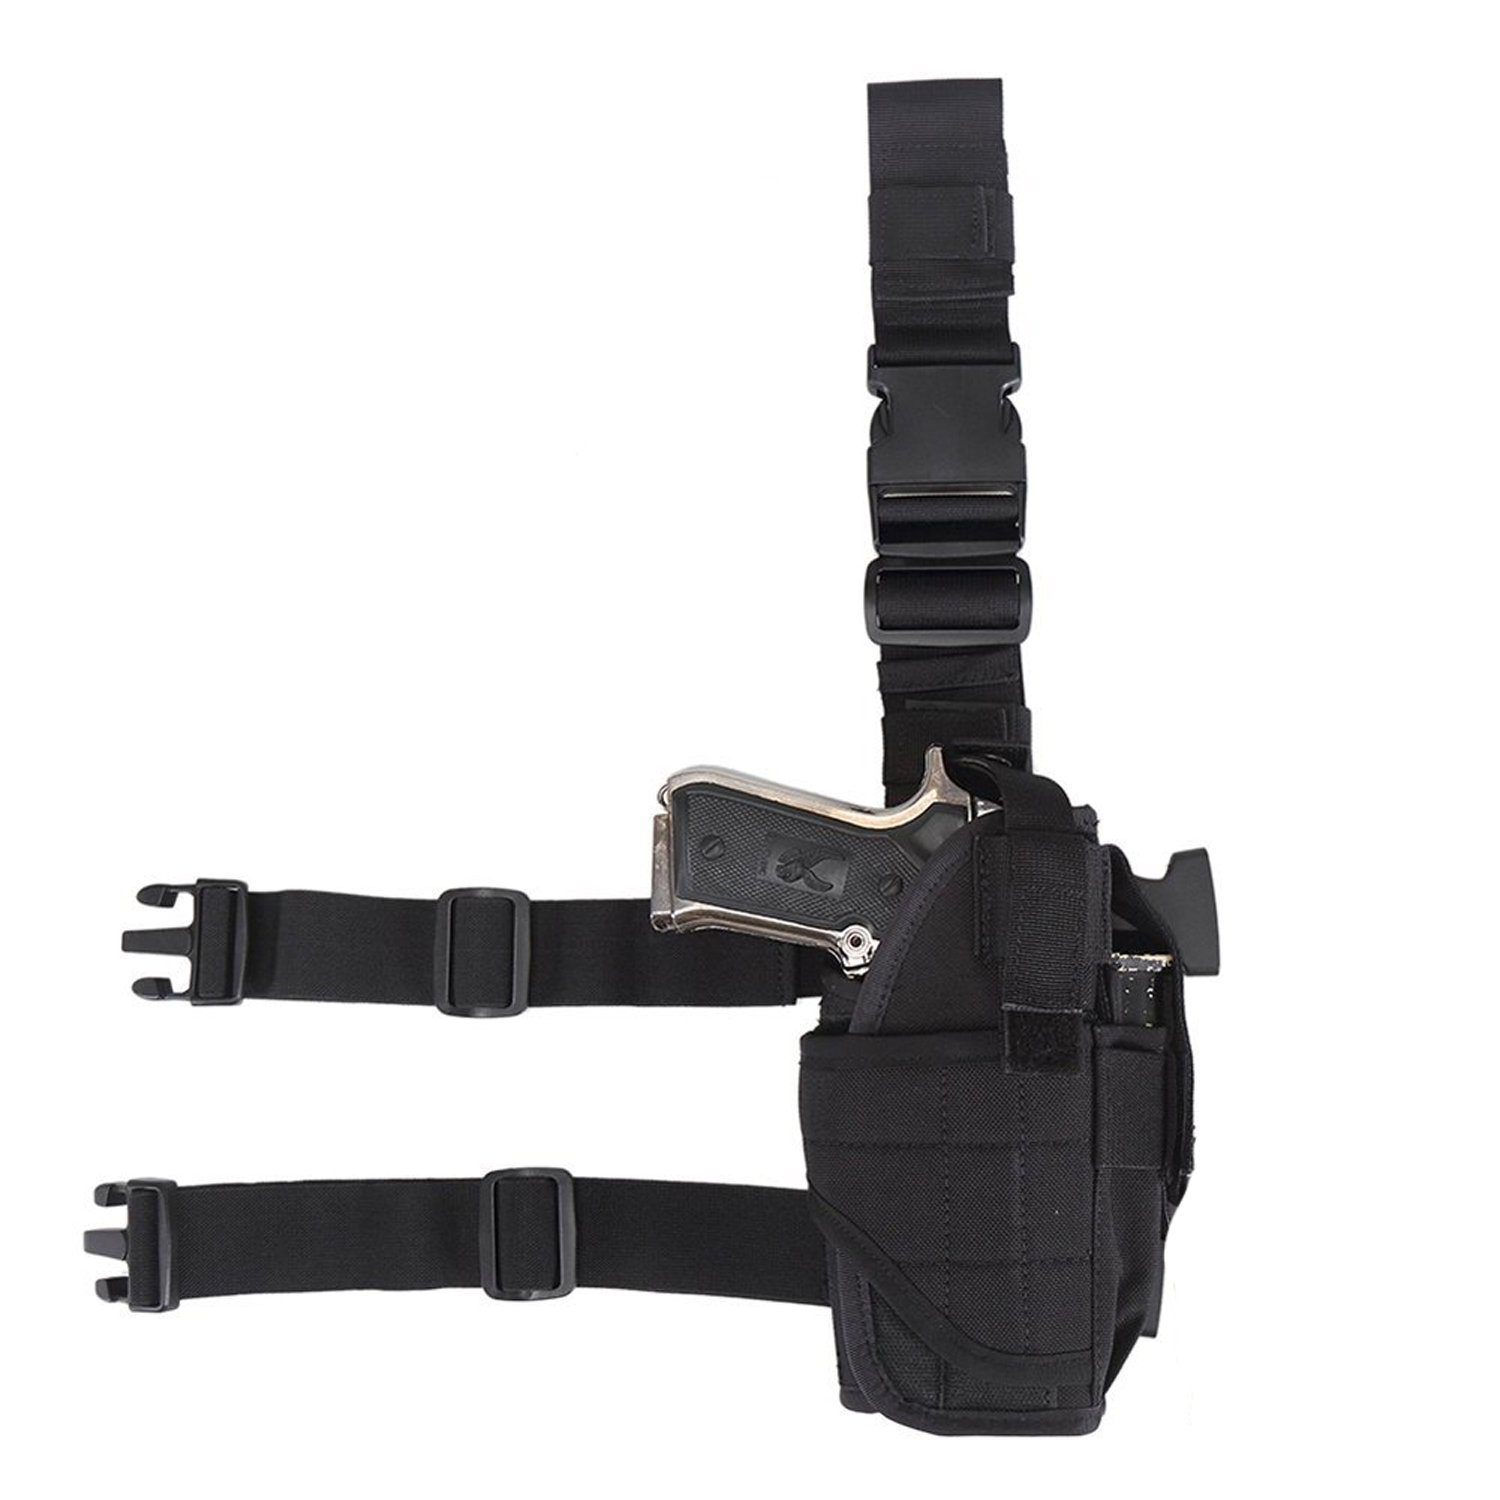 Tactical Gun Holster Drop Leg Bag Military Pistol Pouch for Outdoor